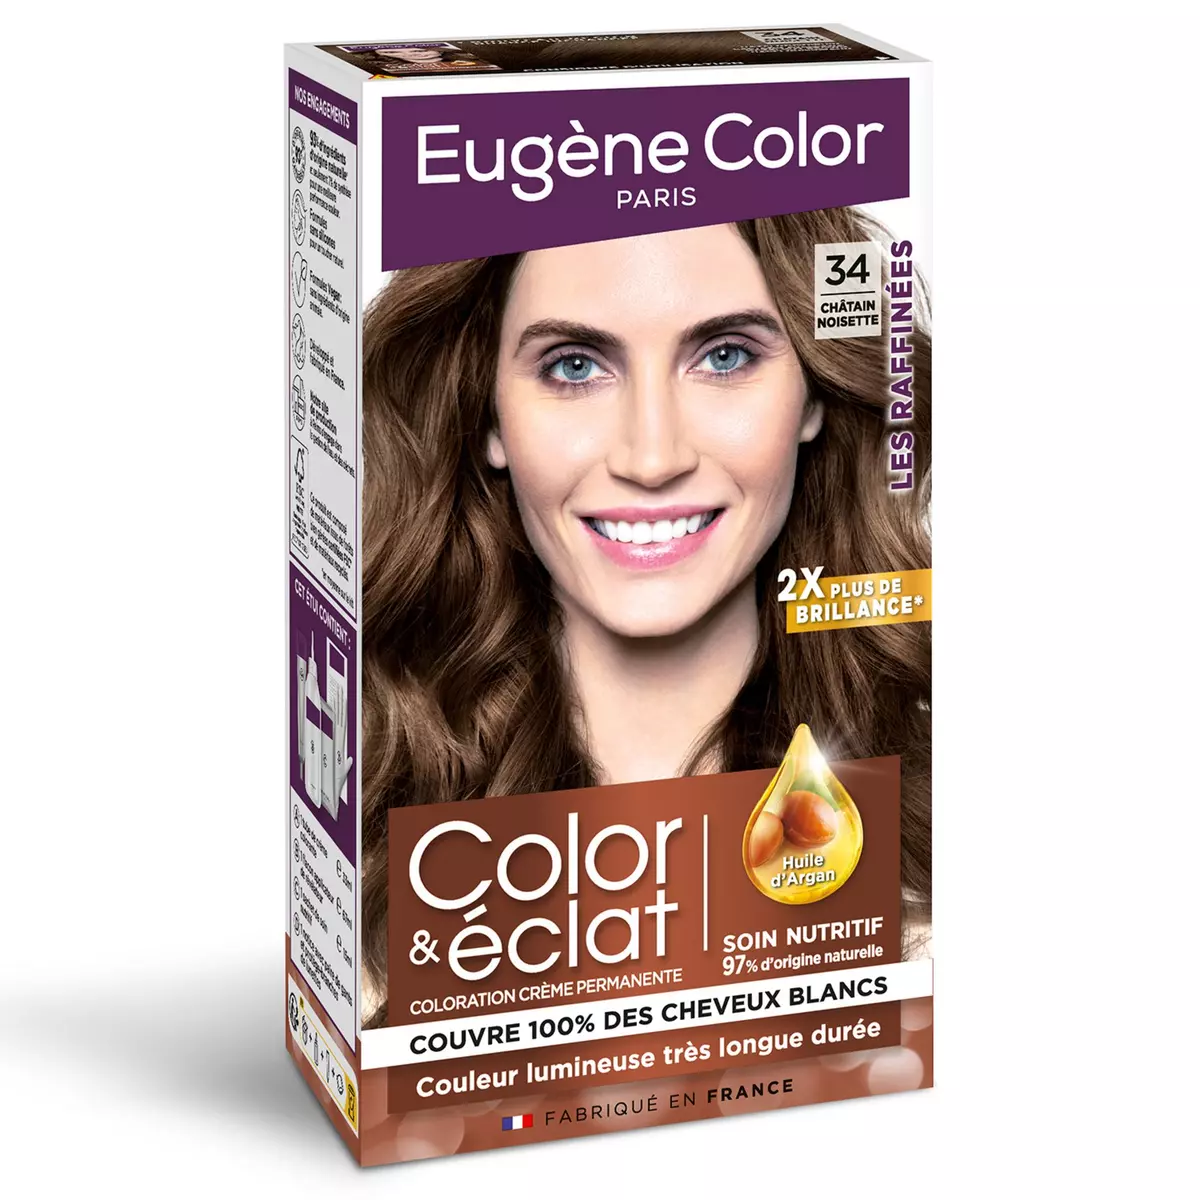 EUGENE COLOR Color & Eclat coloration permanente très longue durée 34 châtain noisette 1 kit